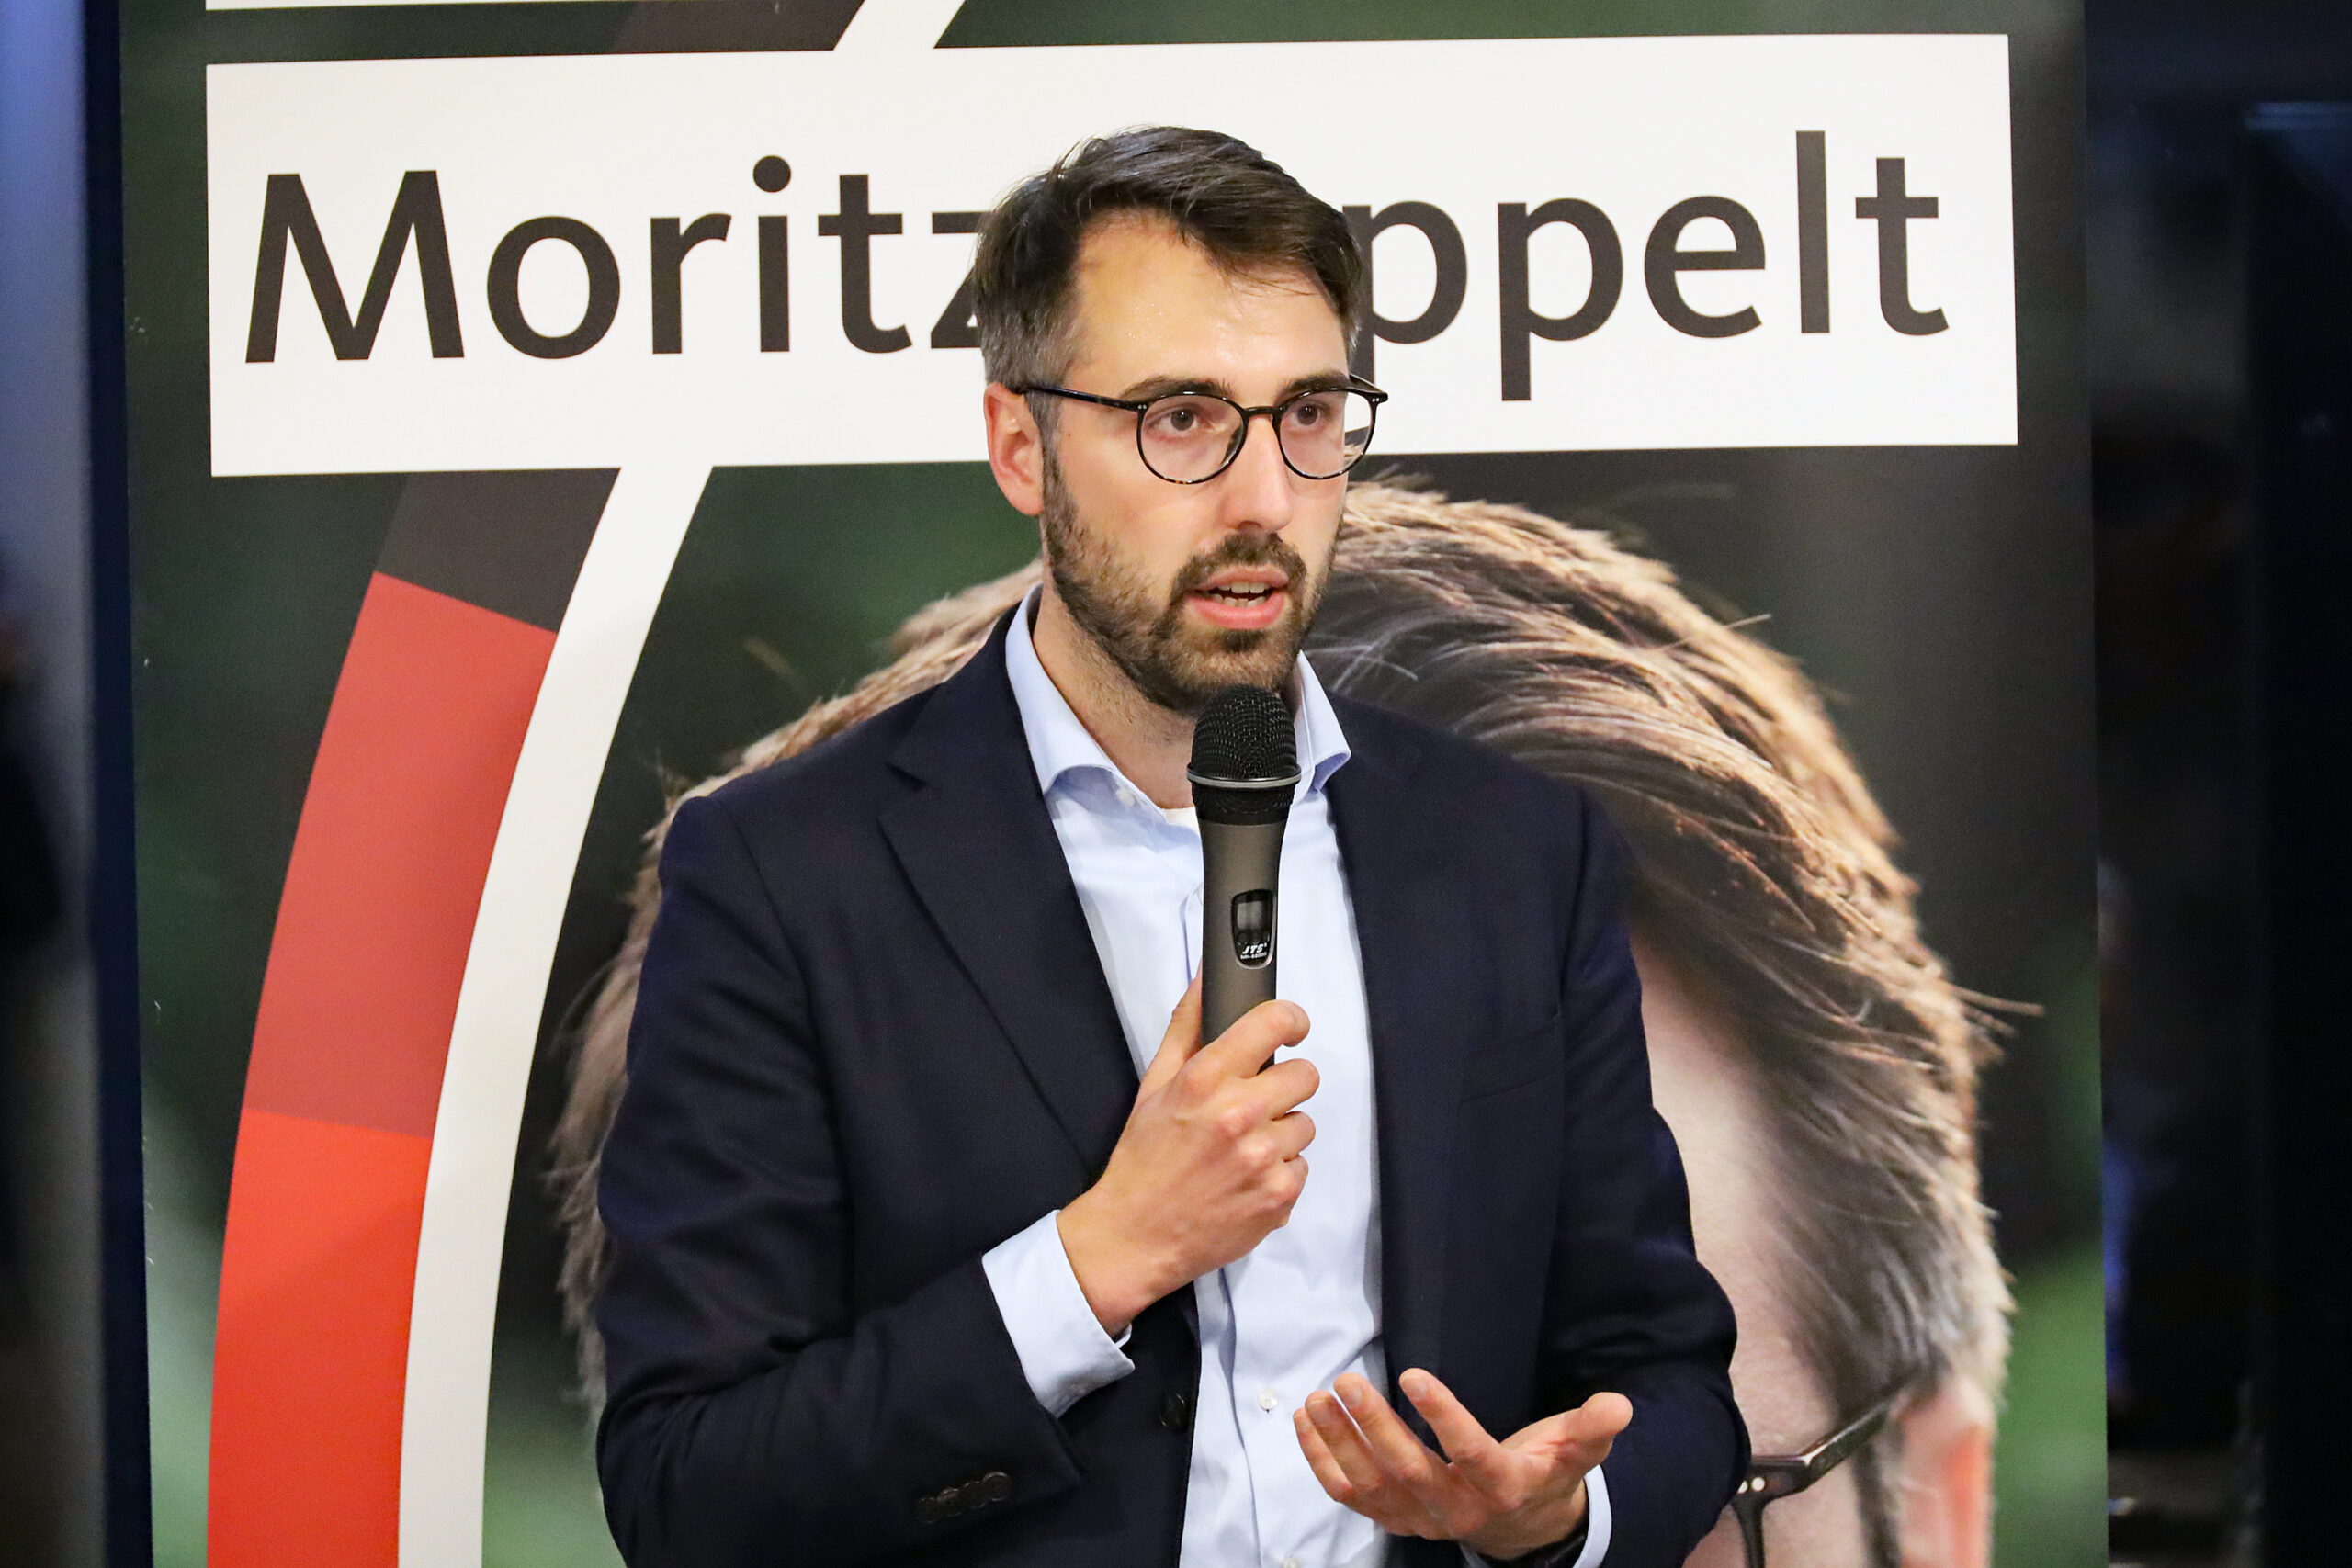 Vollgas geben für das Direktmandat: CDU-Bundestagskandidat Moritz Oppelt zu Wahlkampf-Endspurt in Sinsheim